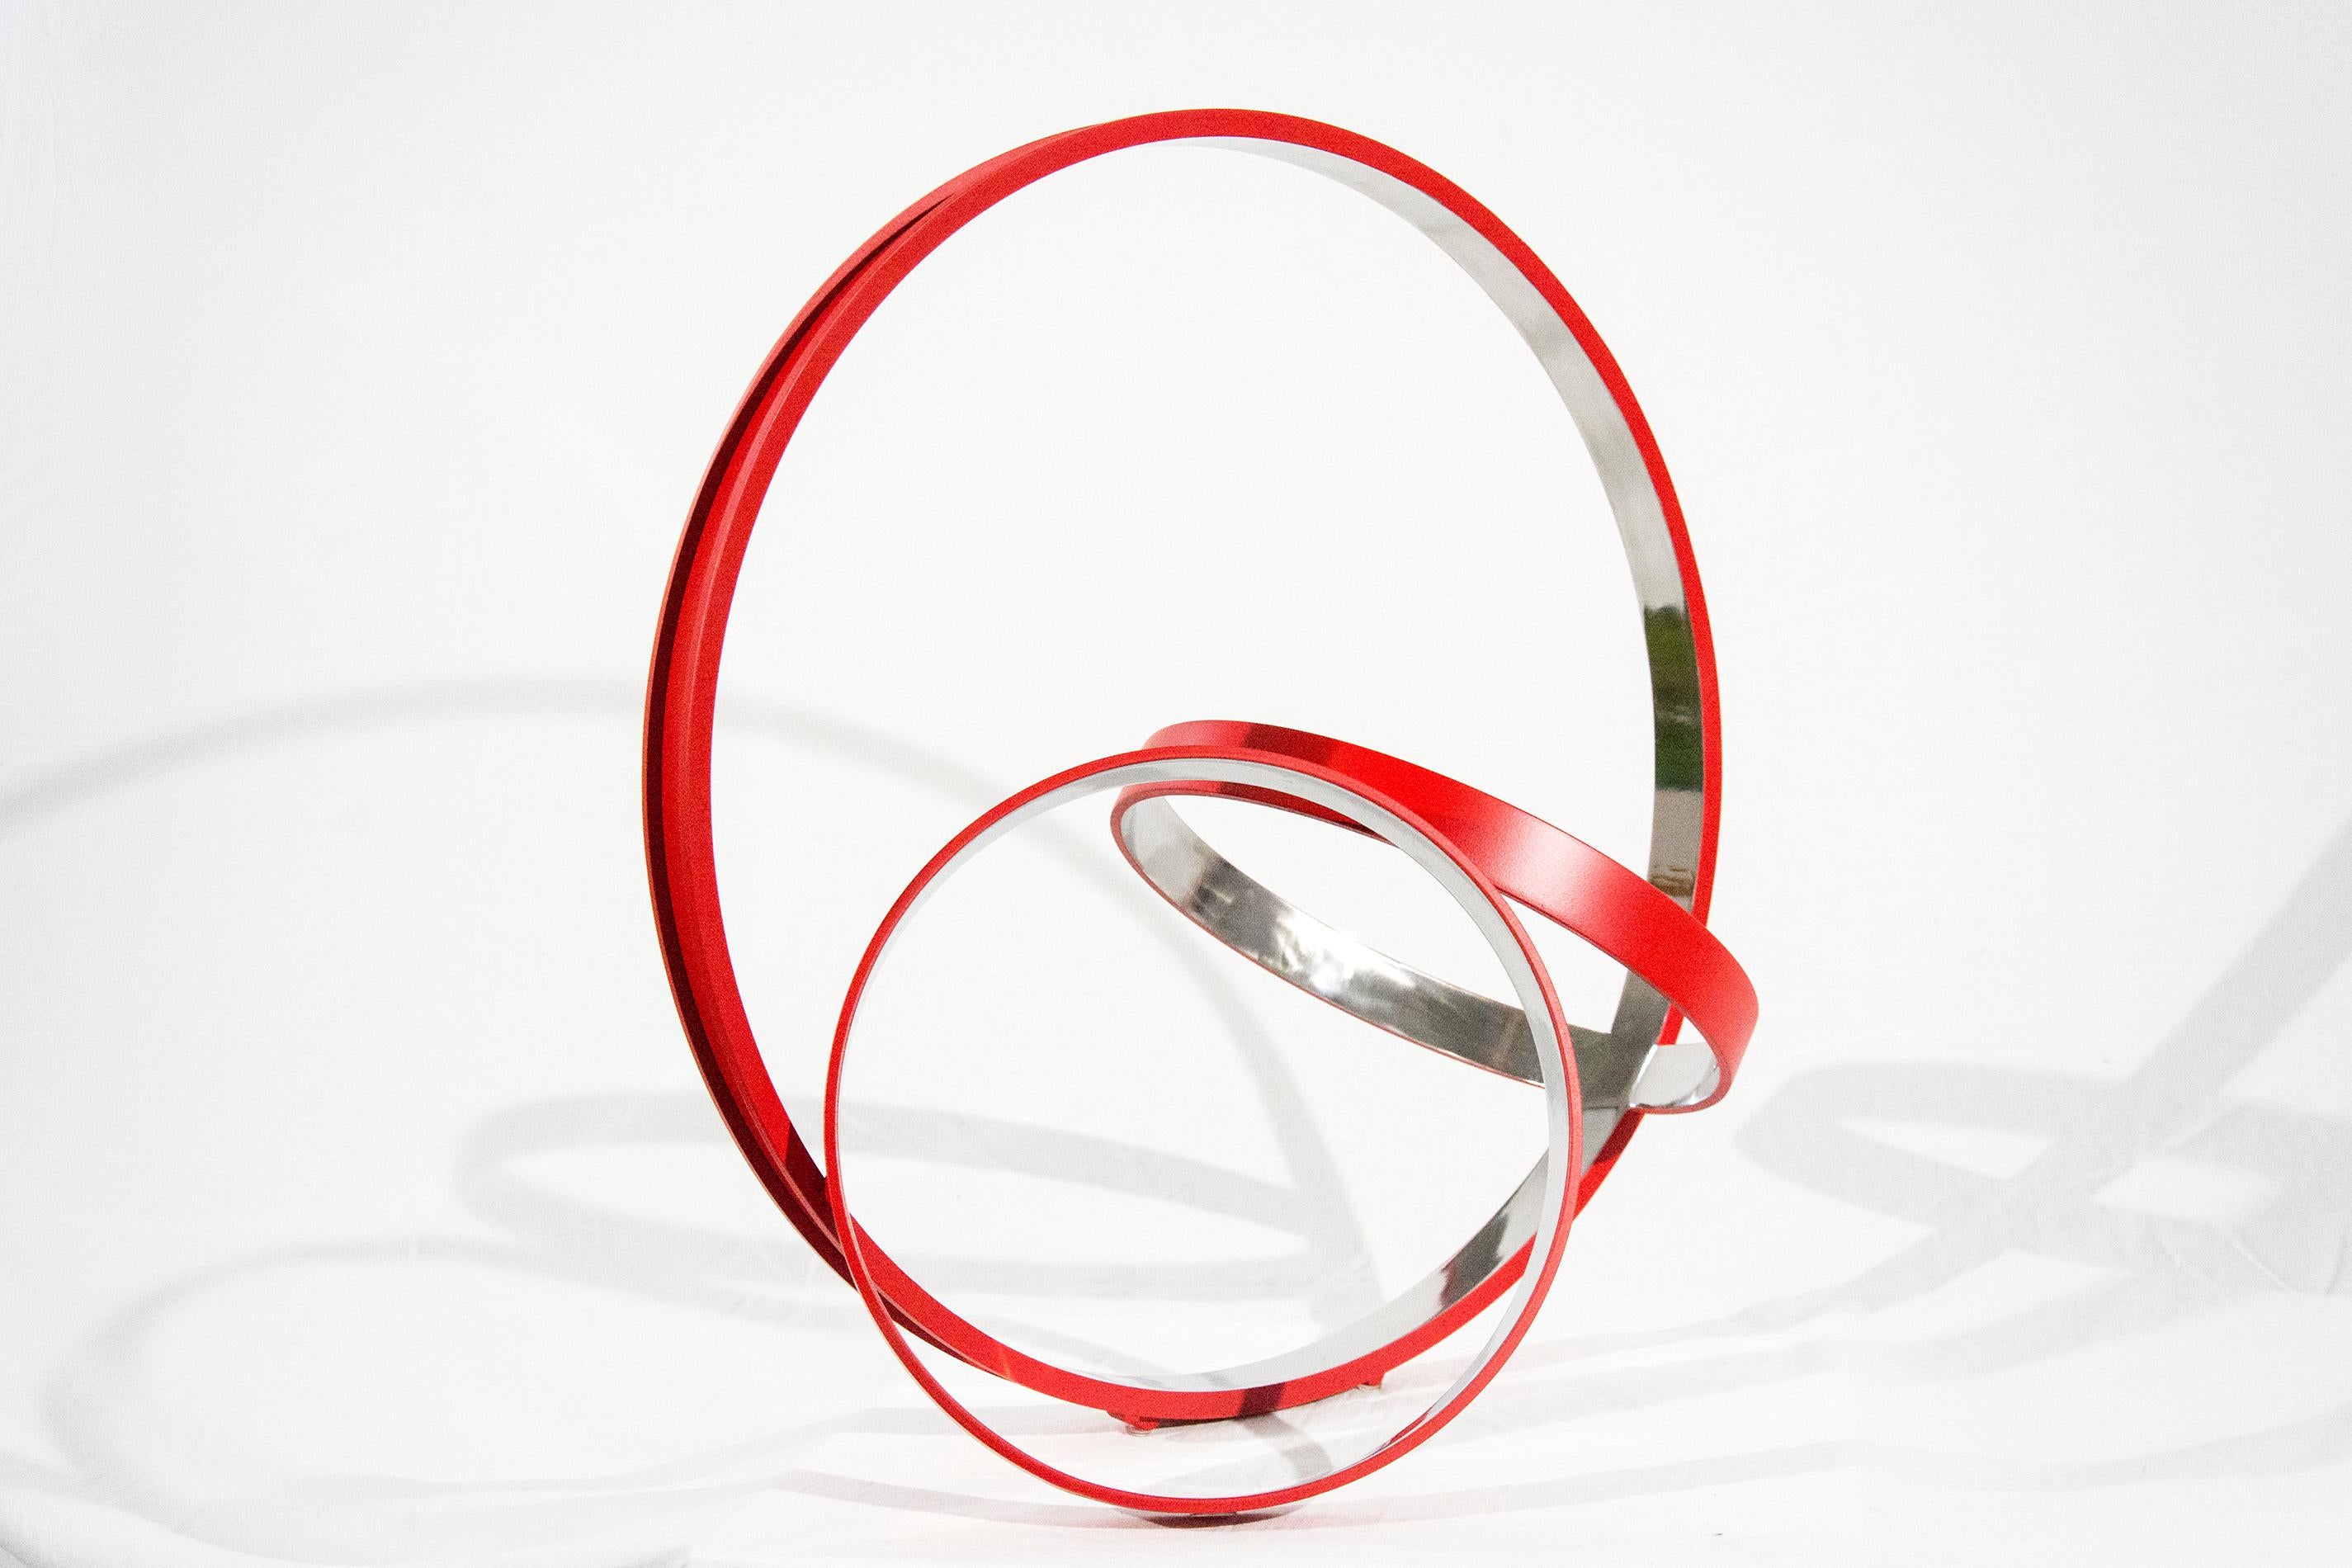 Trois anneaux en acier inoxydable, polis à l'intérieur et d'un rouge cardinal mat à l'extérieur, sont réunis dans une composition élégante et minimaliste par Philippe Pallafray. Le titre de la sculpture peut se traduire par 